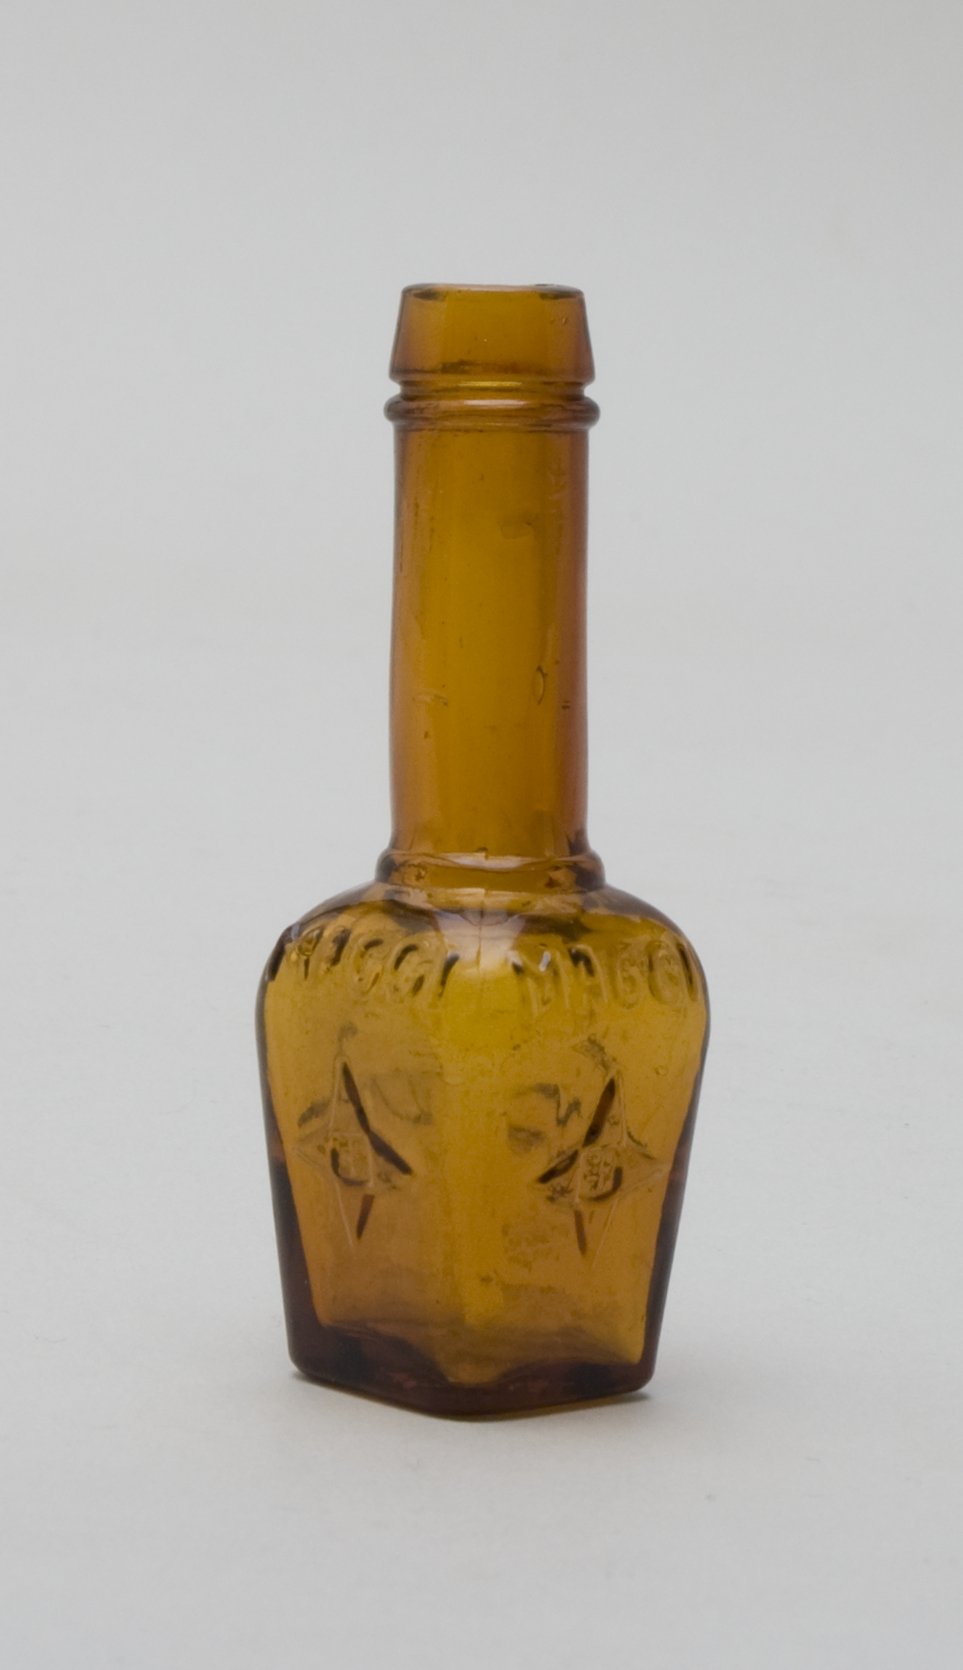 "Maggi" - Probier - Würz-Flasche (Stiftung Domäne Dahlem - Landgut und Museum, Weiternutzung nur mit Genehmigung des Museums CC BY-NC-SA)